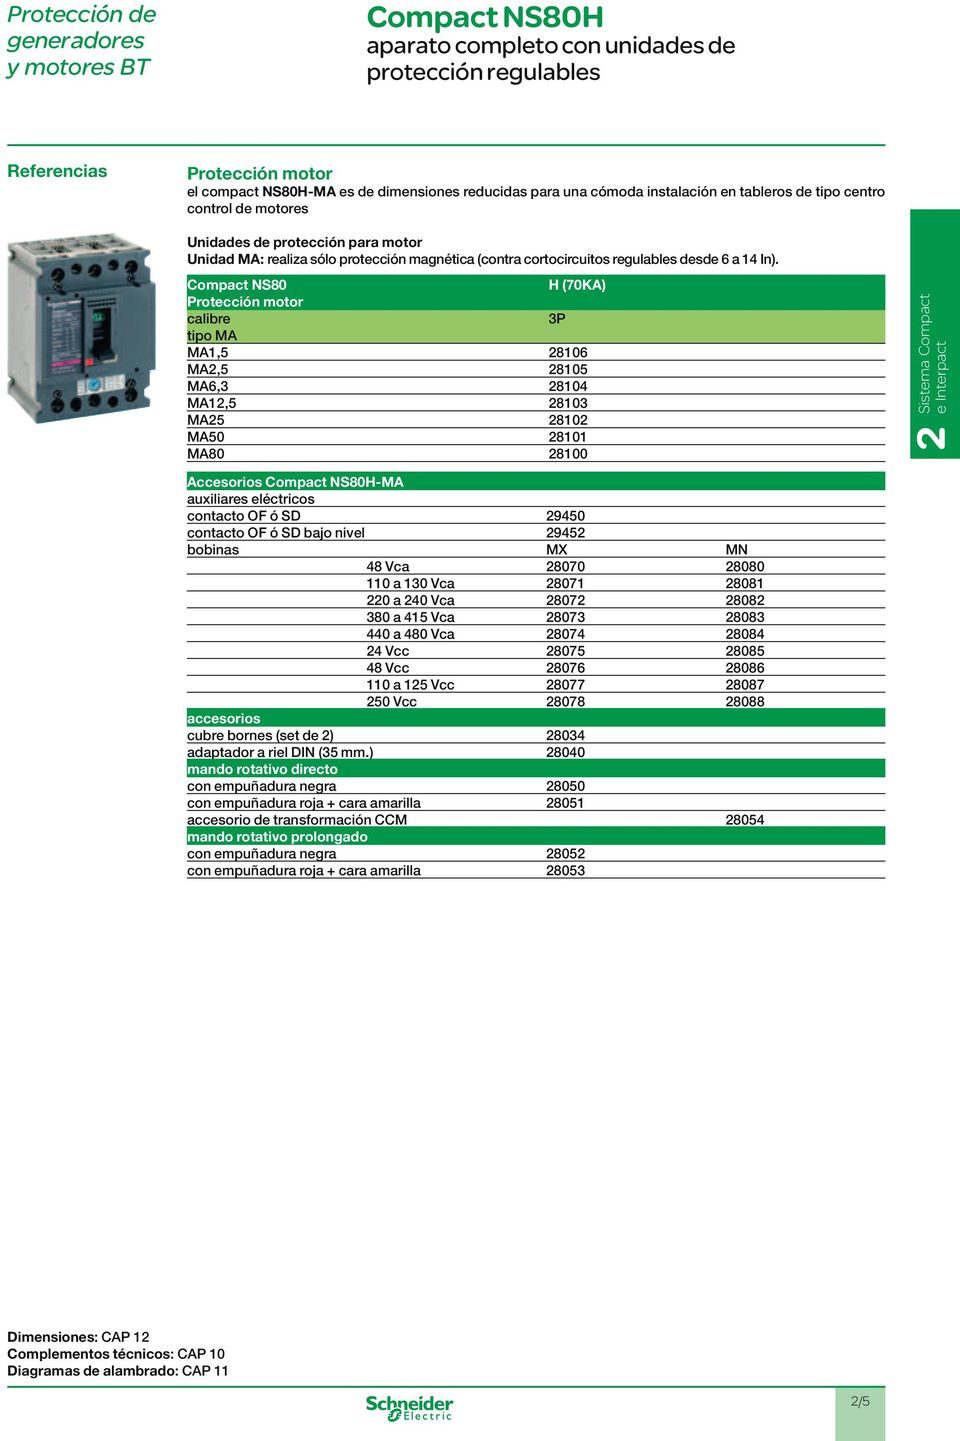 NS80 H (70KA) Protección motor calibre tio MA MA1,5 8106 MA,5 8105 MA6,3 8104 MA1,5 8103 MA5 810 MA50 8101 MA80 8100 e Interact Accesorios NS80HMA auxiliares eléctricos contacto OF ó SD 9450 contacto